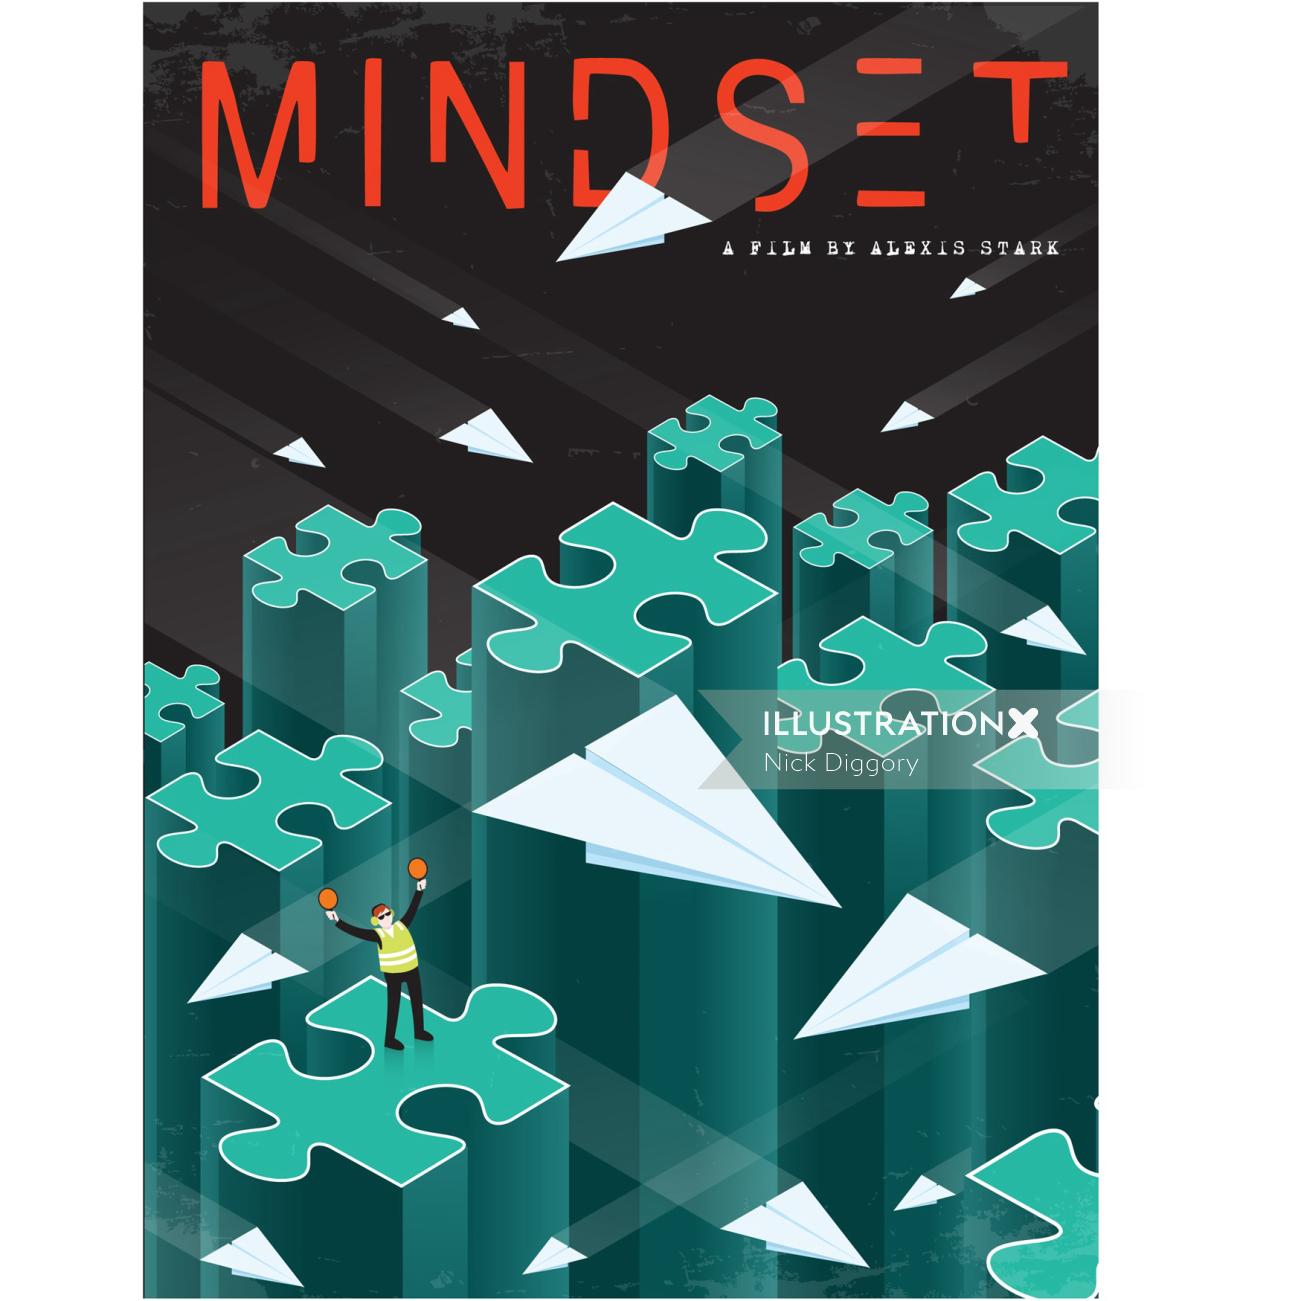 Digital Illustration mindset book cover
